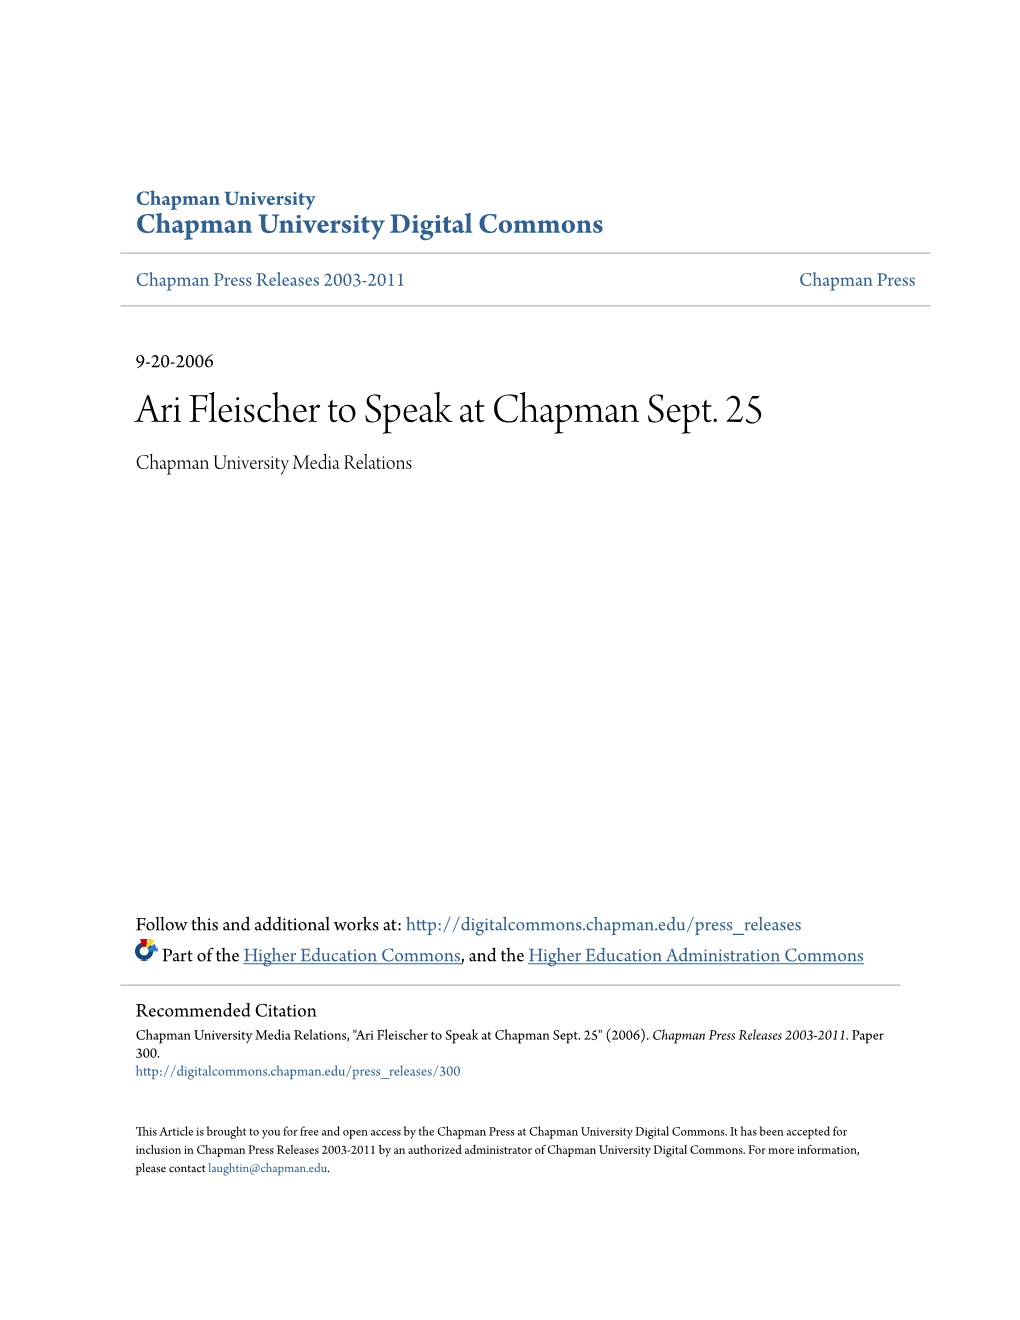 Ari Fleischer to Speak at Chapman Sept. 25 Chapman University Media Relations